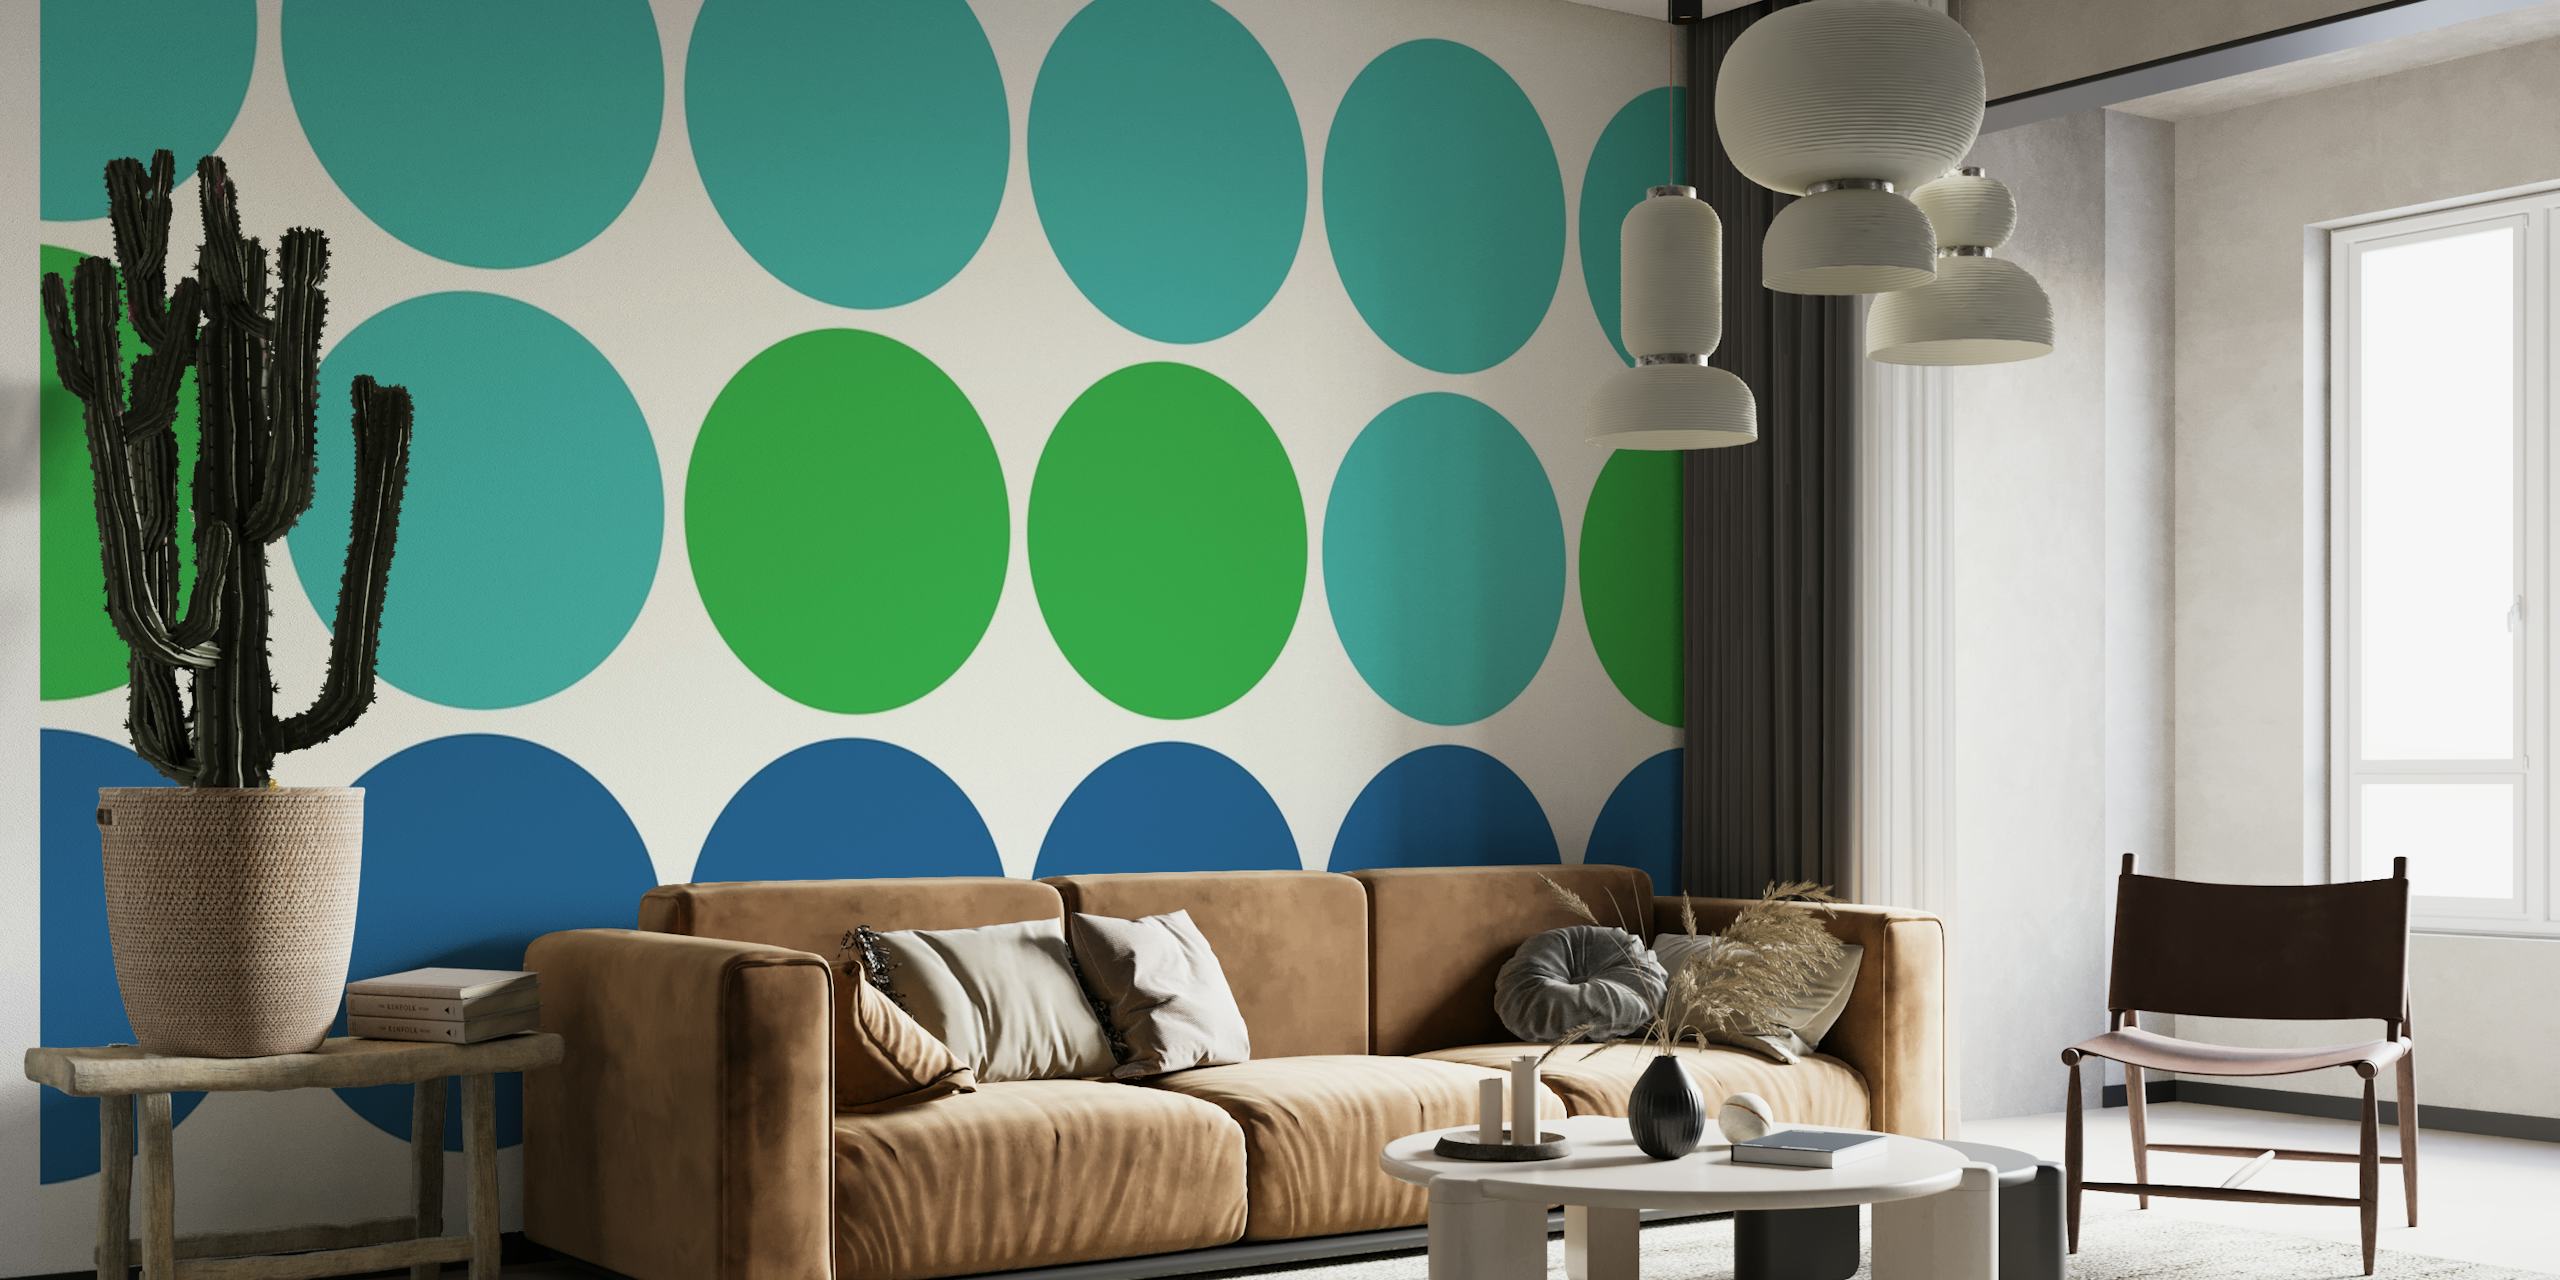 Geometrische muurschildering met cirkelpatroon in de kleuren turkoois, marineblauw en groen